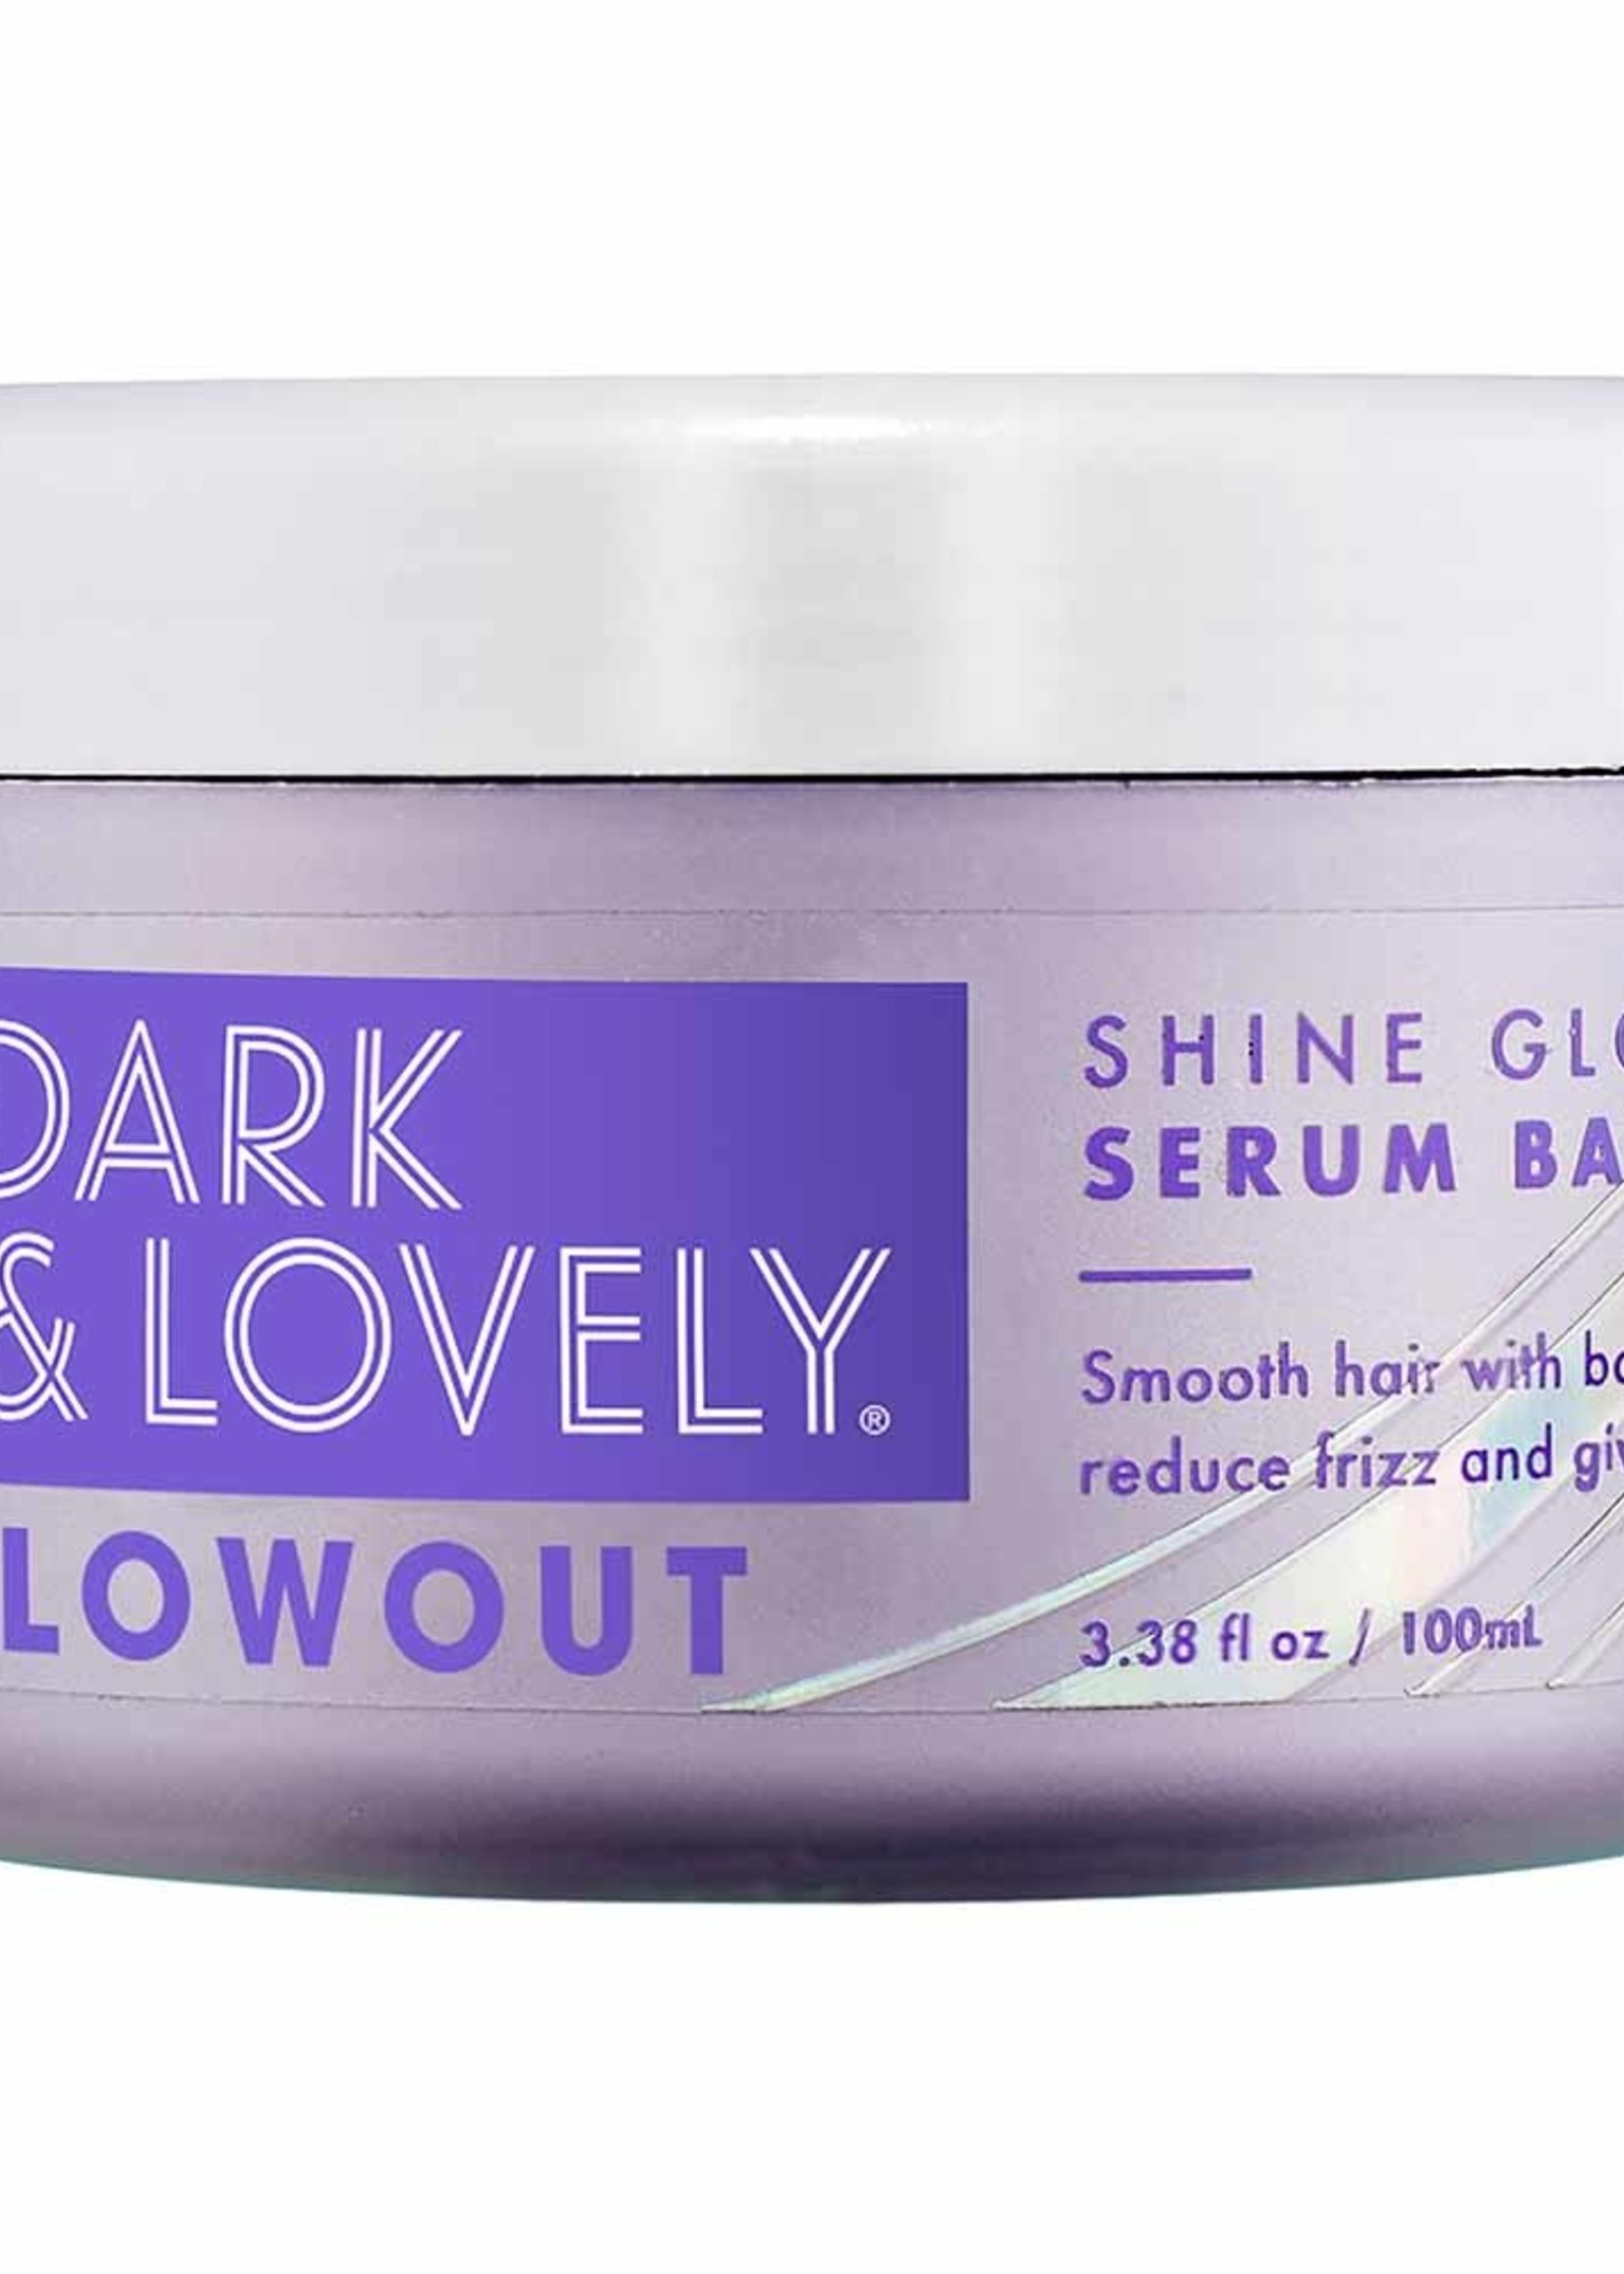 Dark & Lovely Blowout Shine Gloss Styling Serum Balm